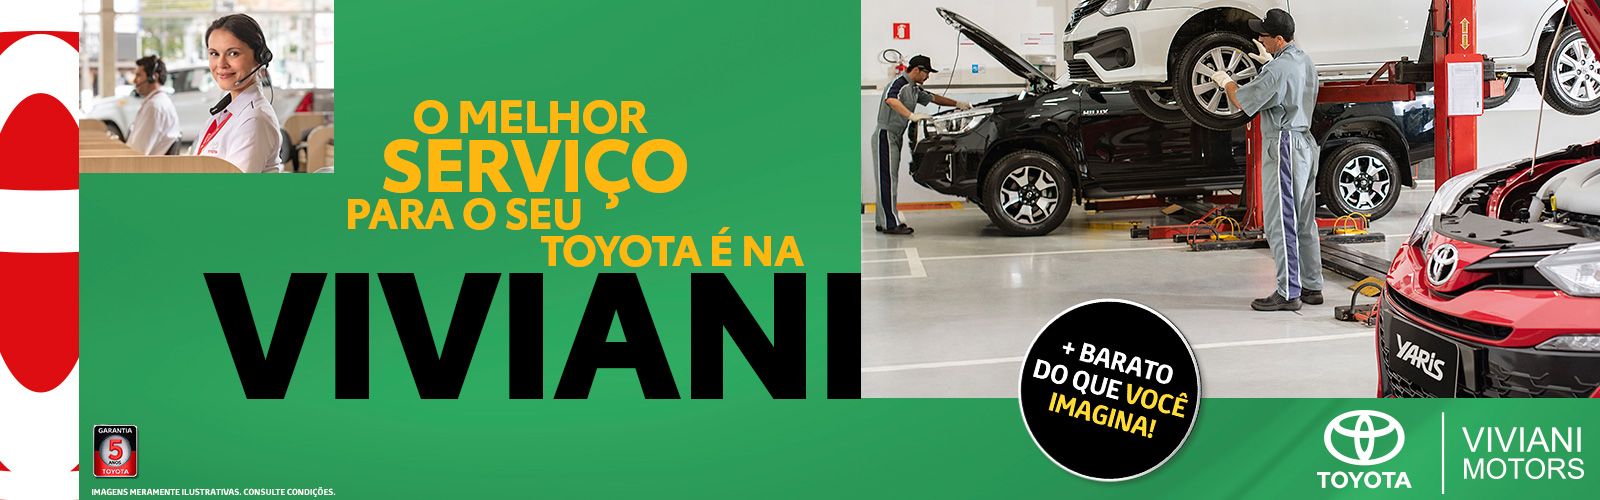 O melhor serviço para seu Toyota, está na Viviani!